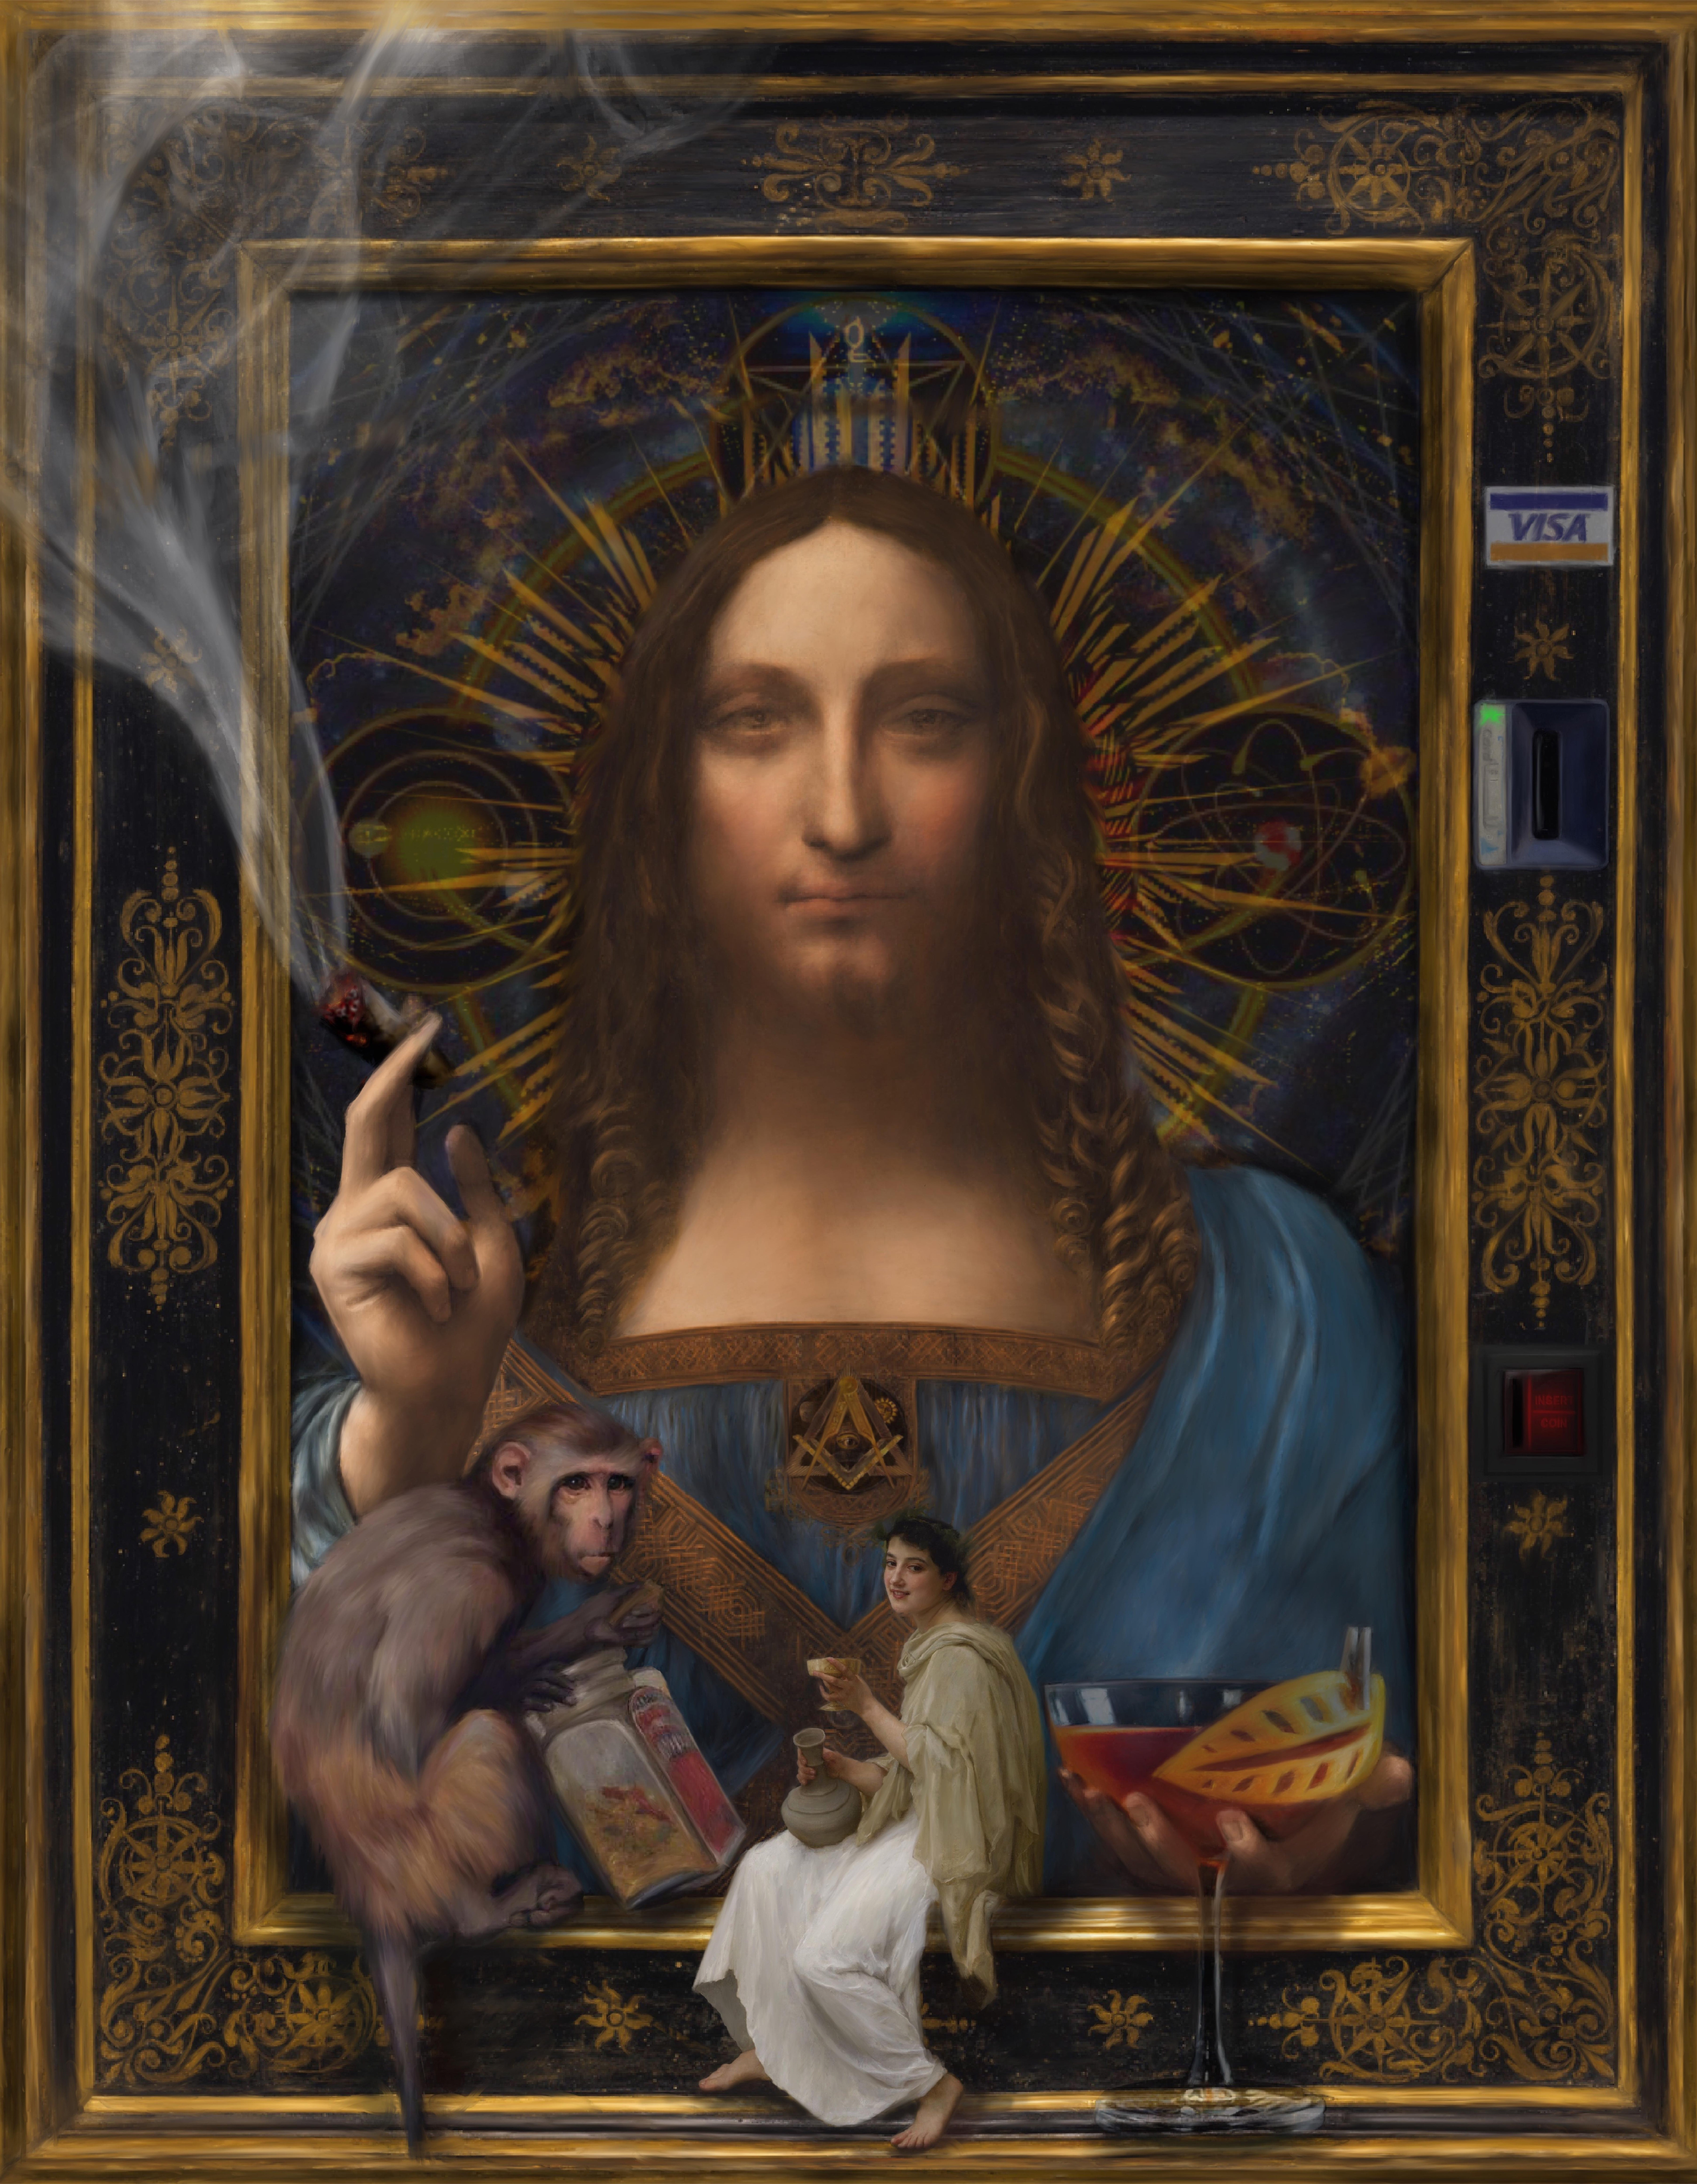 Chamán. Surrealistisches, ironisches Porträt nach dem Vorbild von Da Vincis Salvator Mundi.